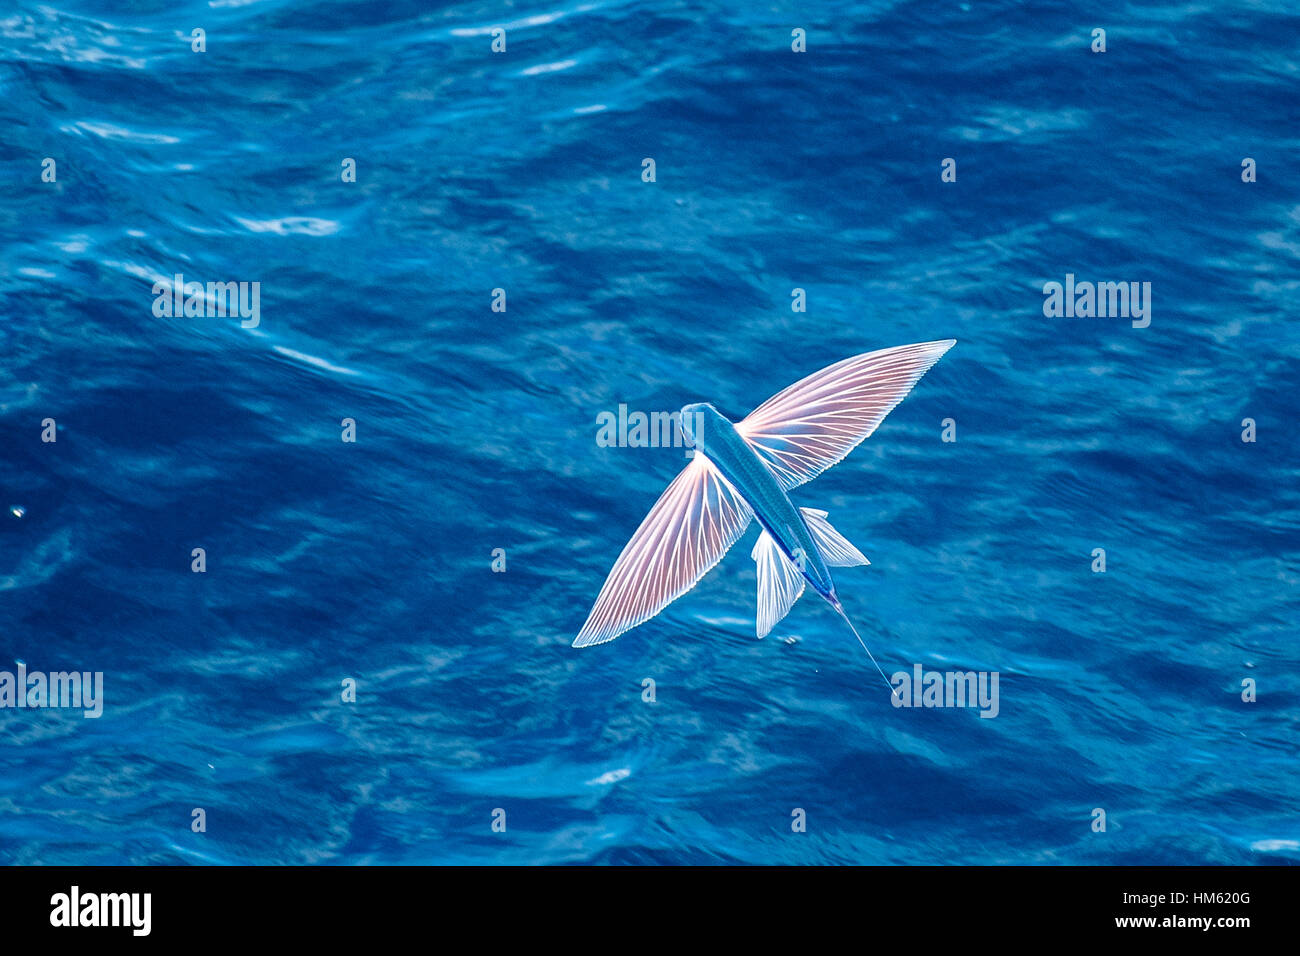 Fliegende Fische-Arten in der Luft, wissenschaftlicher Name unbekannt, mehrere hundert Meilen vor Mauretanien, Afrika, Atlantik. Stockfoto